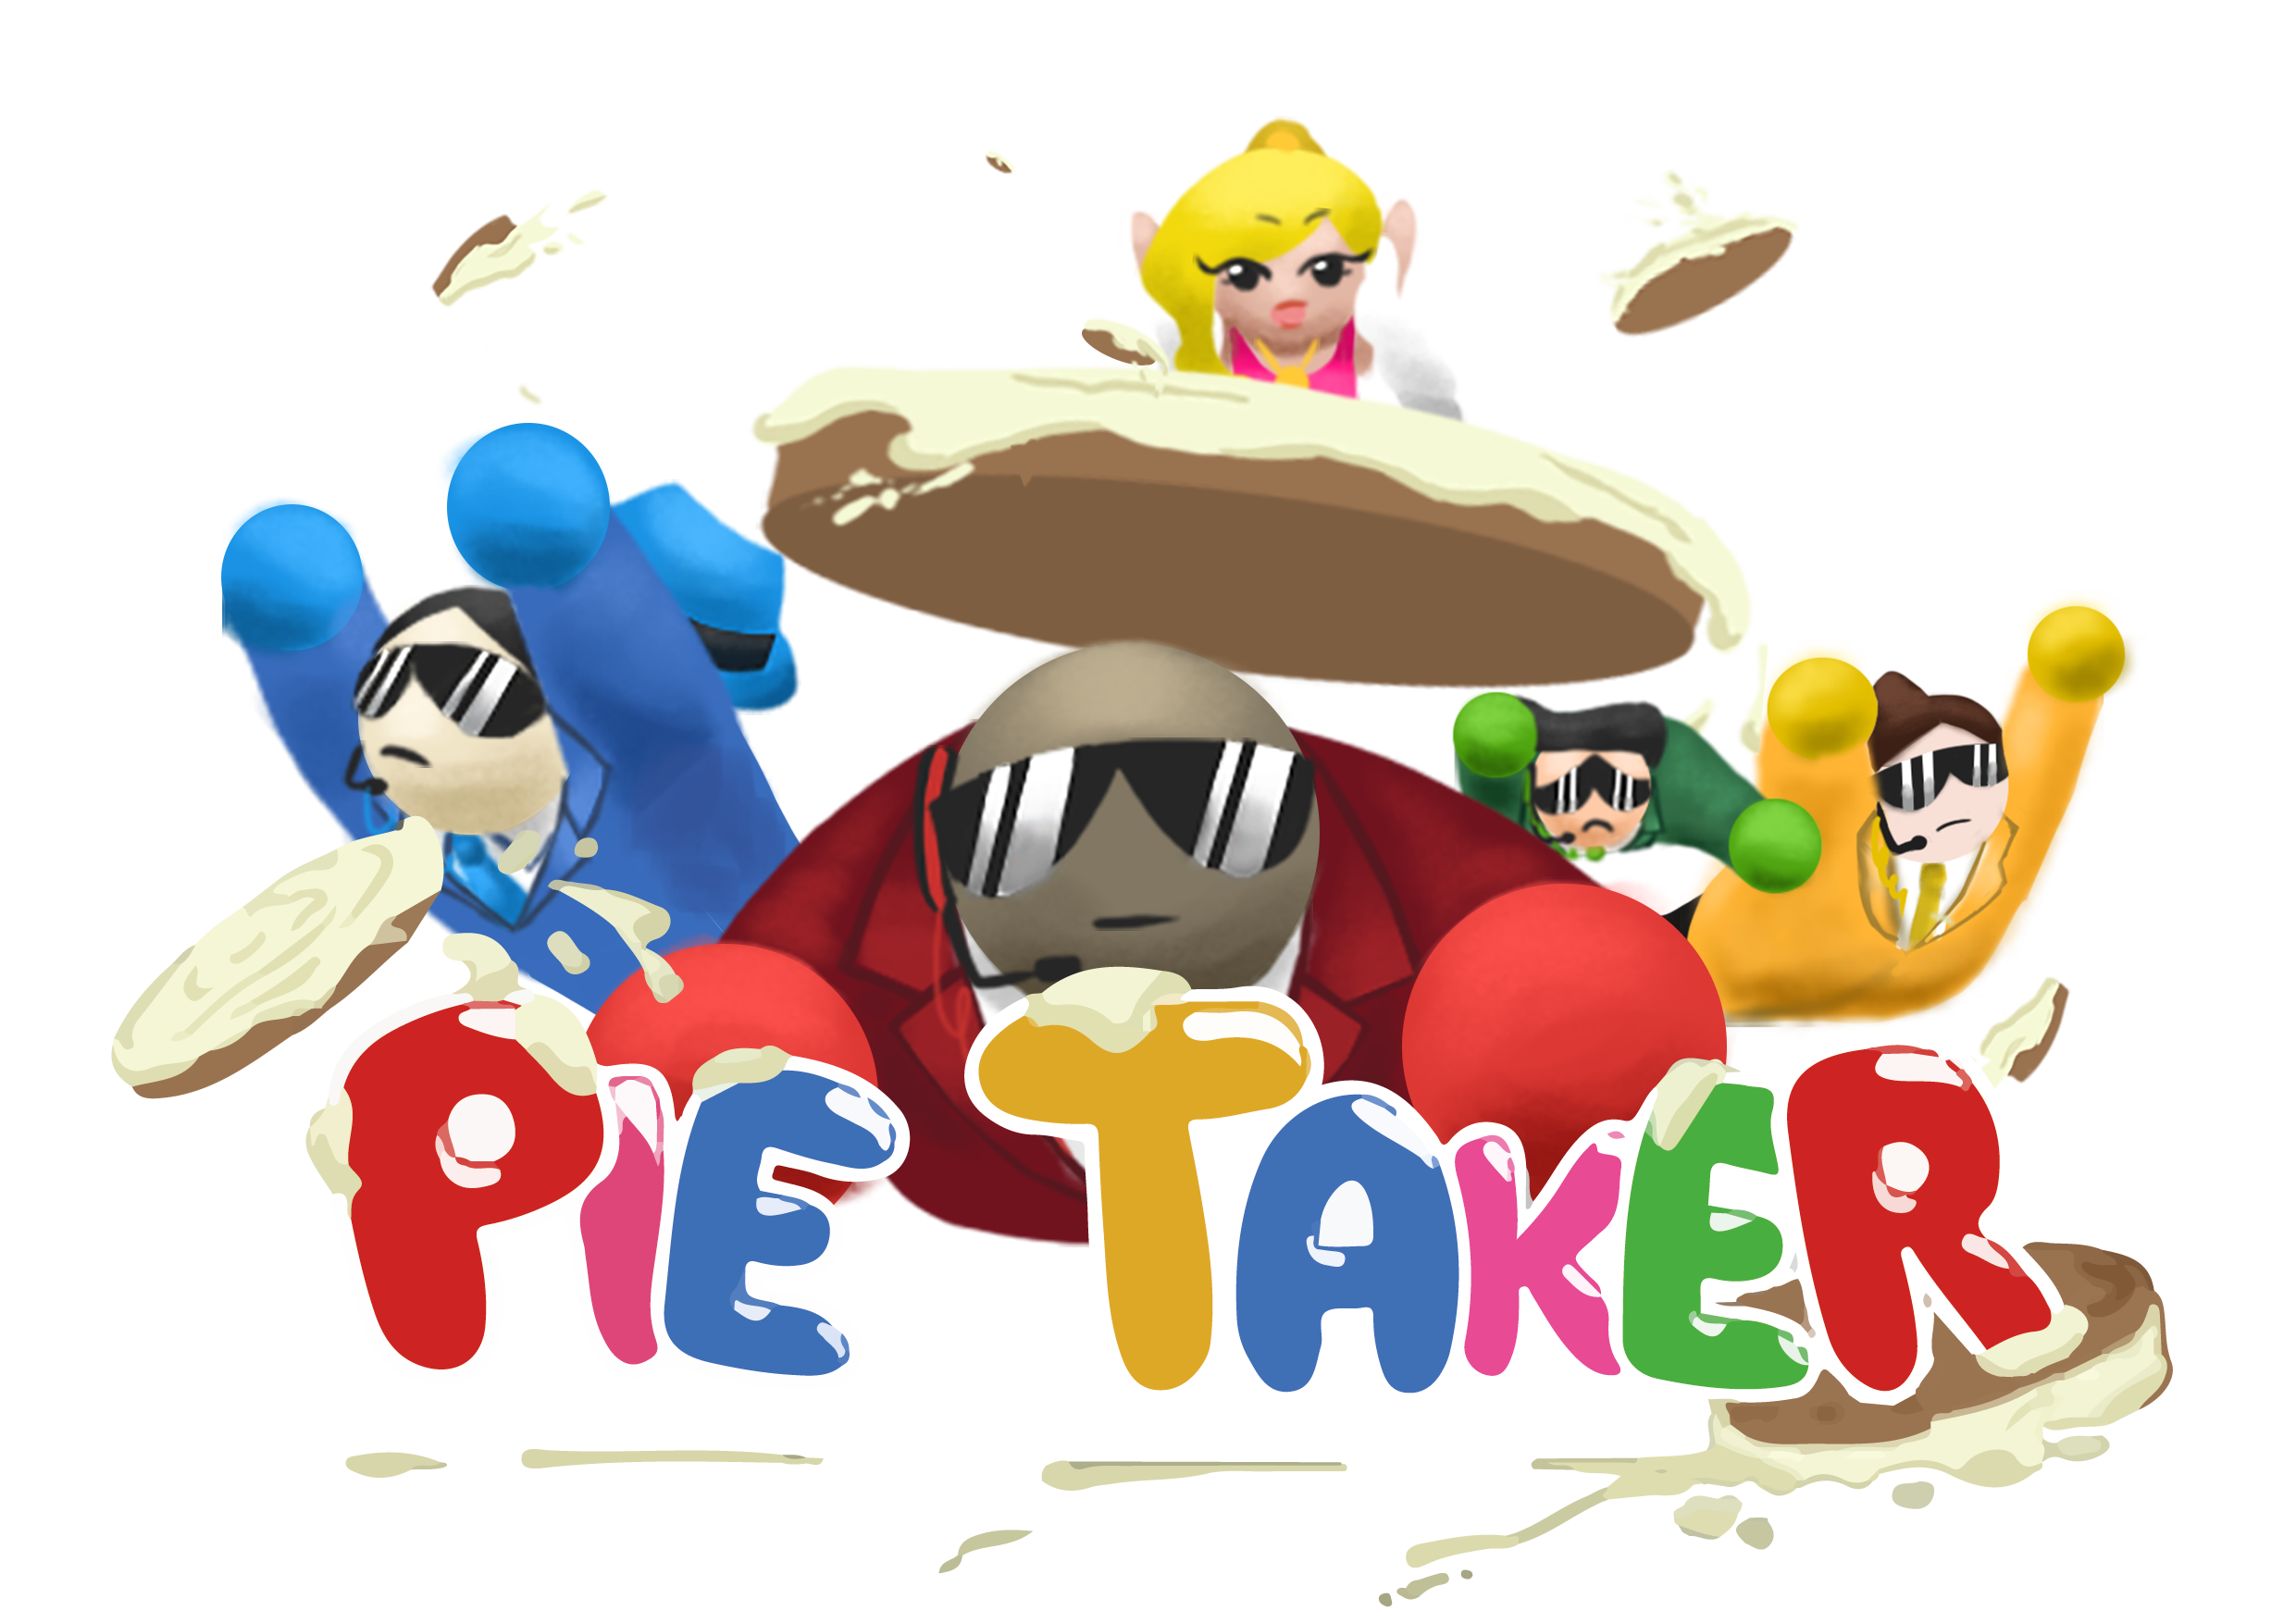 Pie Taker